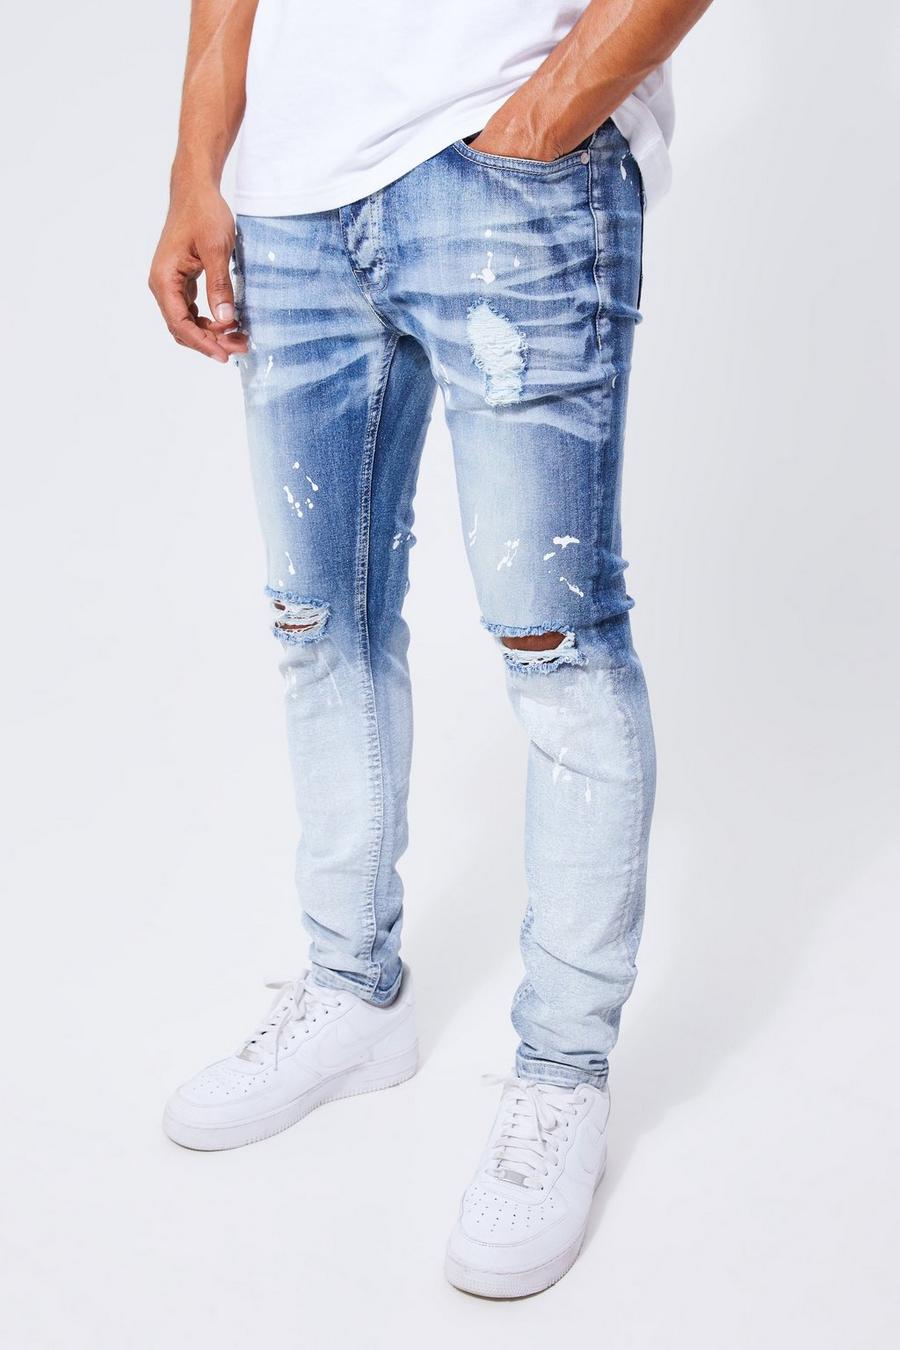 Paint Splatter Jeans -  Canada